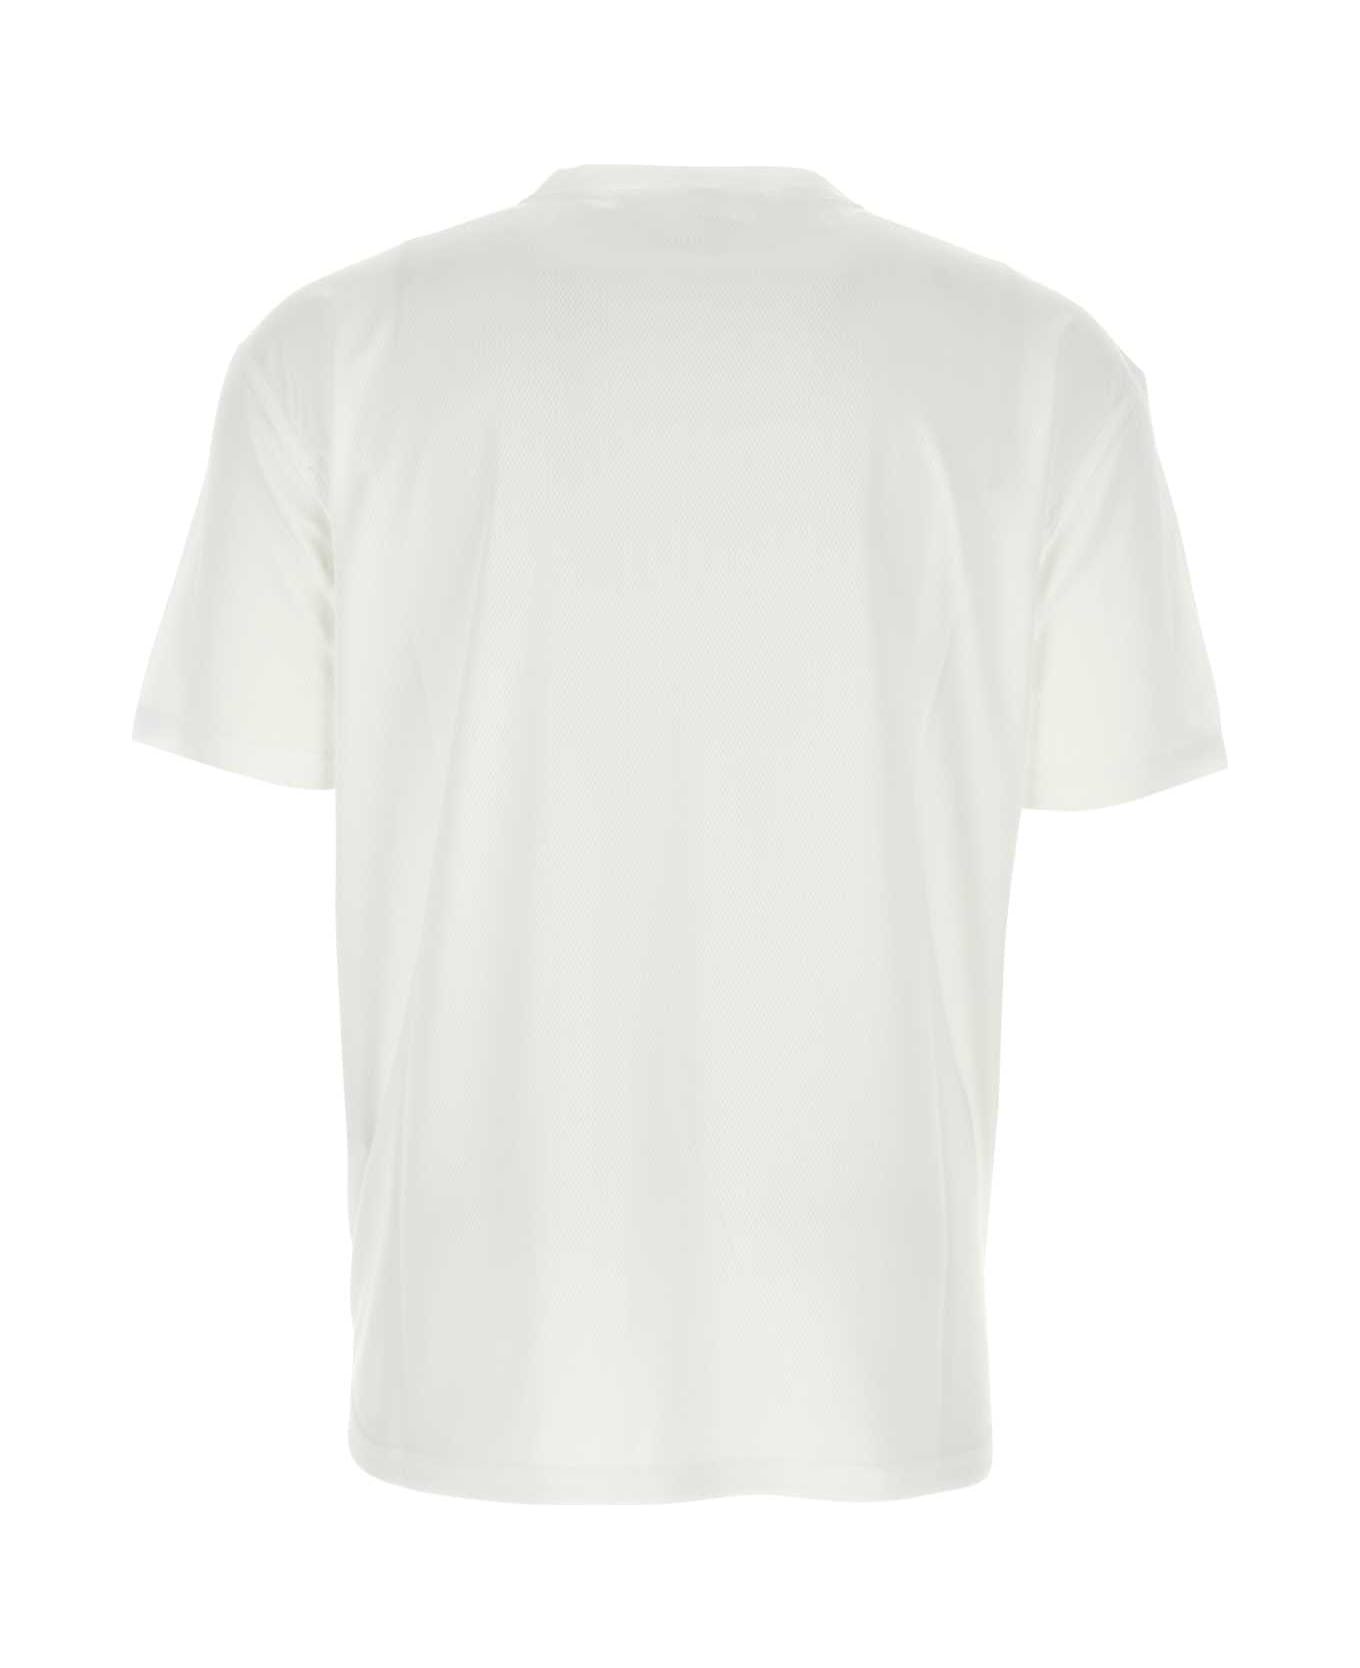 1017 ALYX 9SM White Mesh T-shirt - WHITE